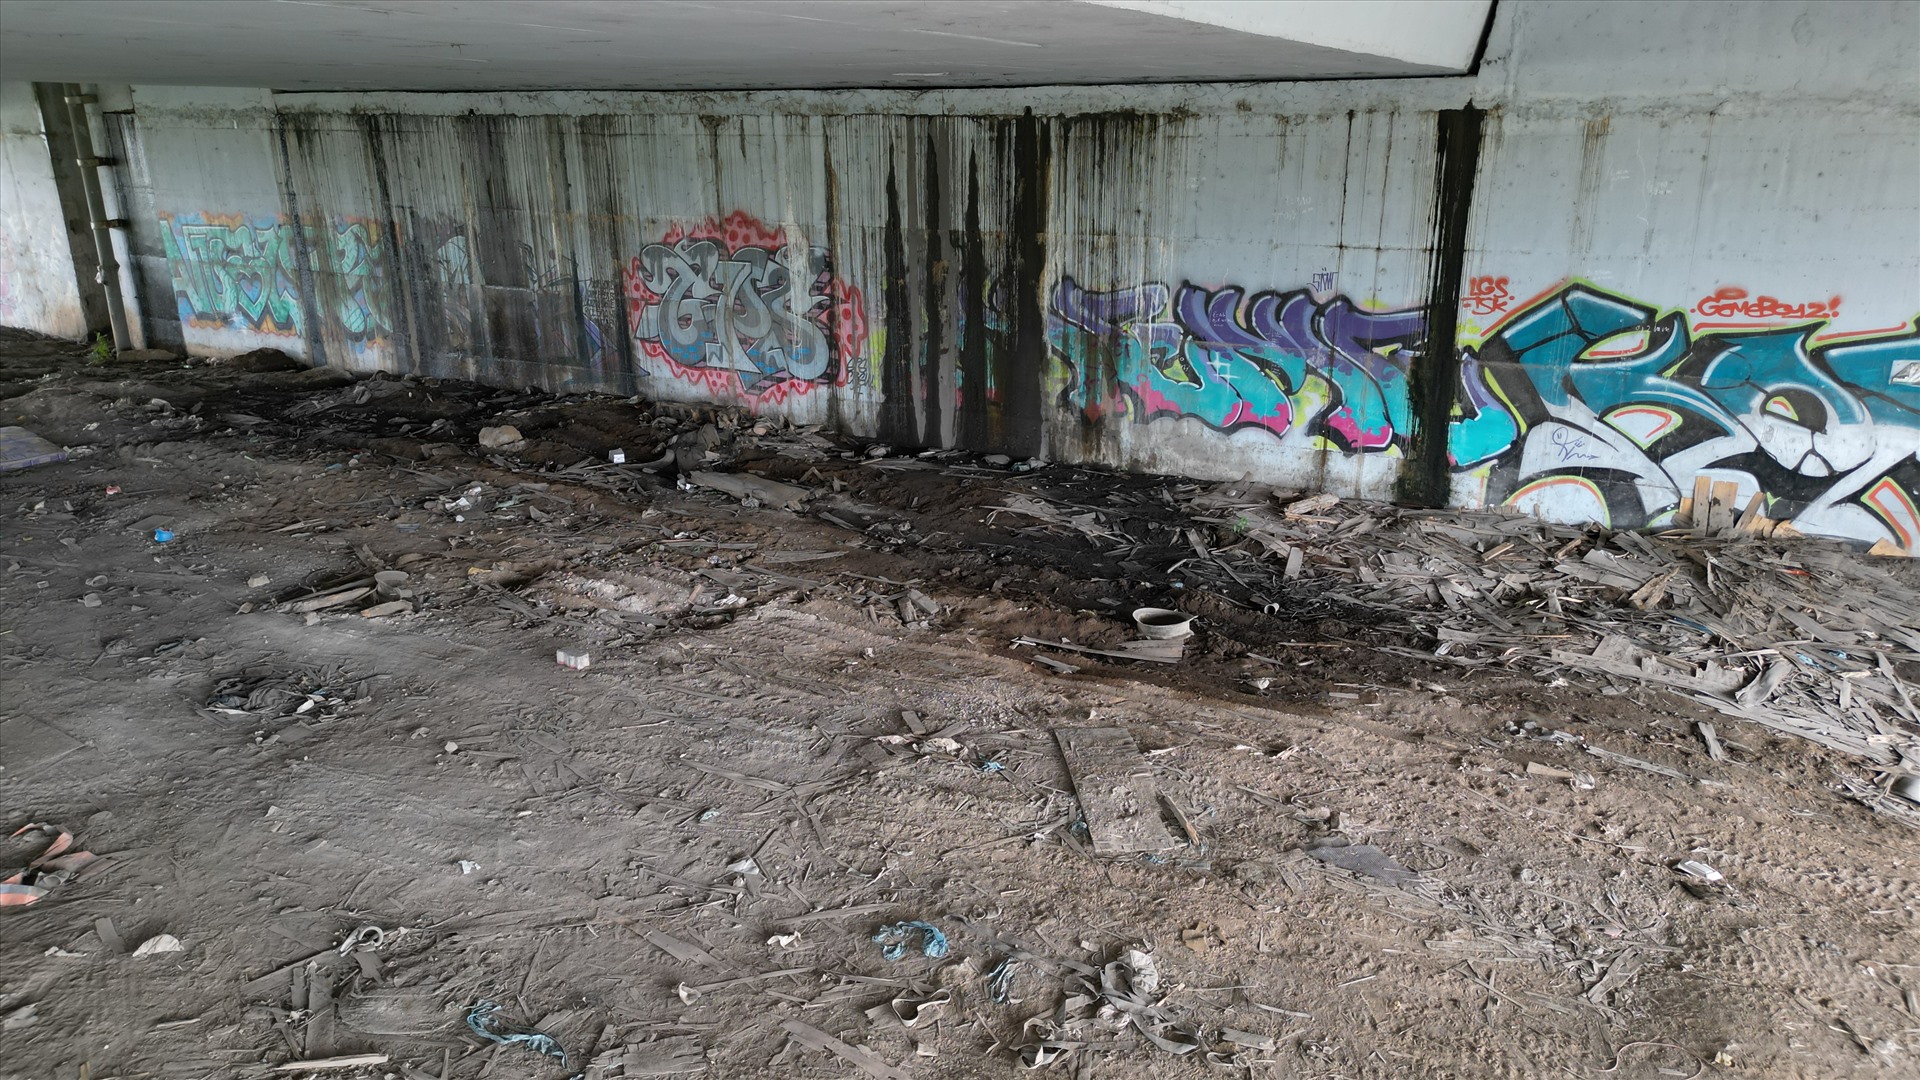 Trước khi được dọn sạch và lắp rào chắn, khu vực gầm cầu Rạch Chiếc từng là điểm tập kết rác thải, bốc mùi hôi thối. Nơi này nằm ngay cạnh tuyến Metro số 1 qua xa lộ Hà Nội ở phường An Phú, TP Thủ Đức.